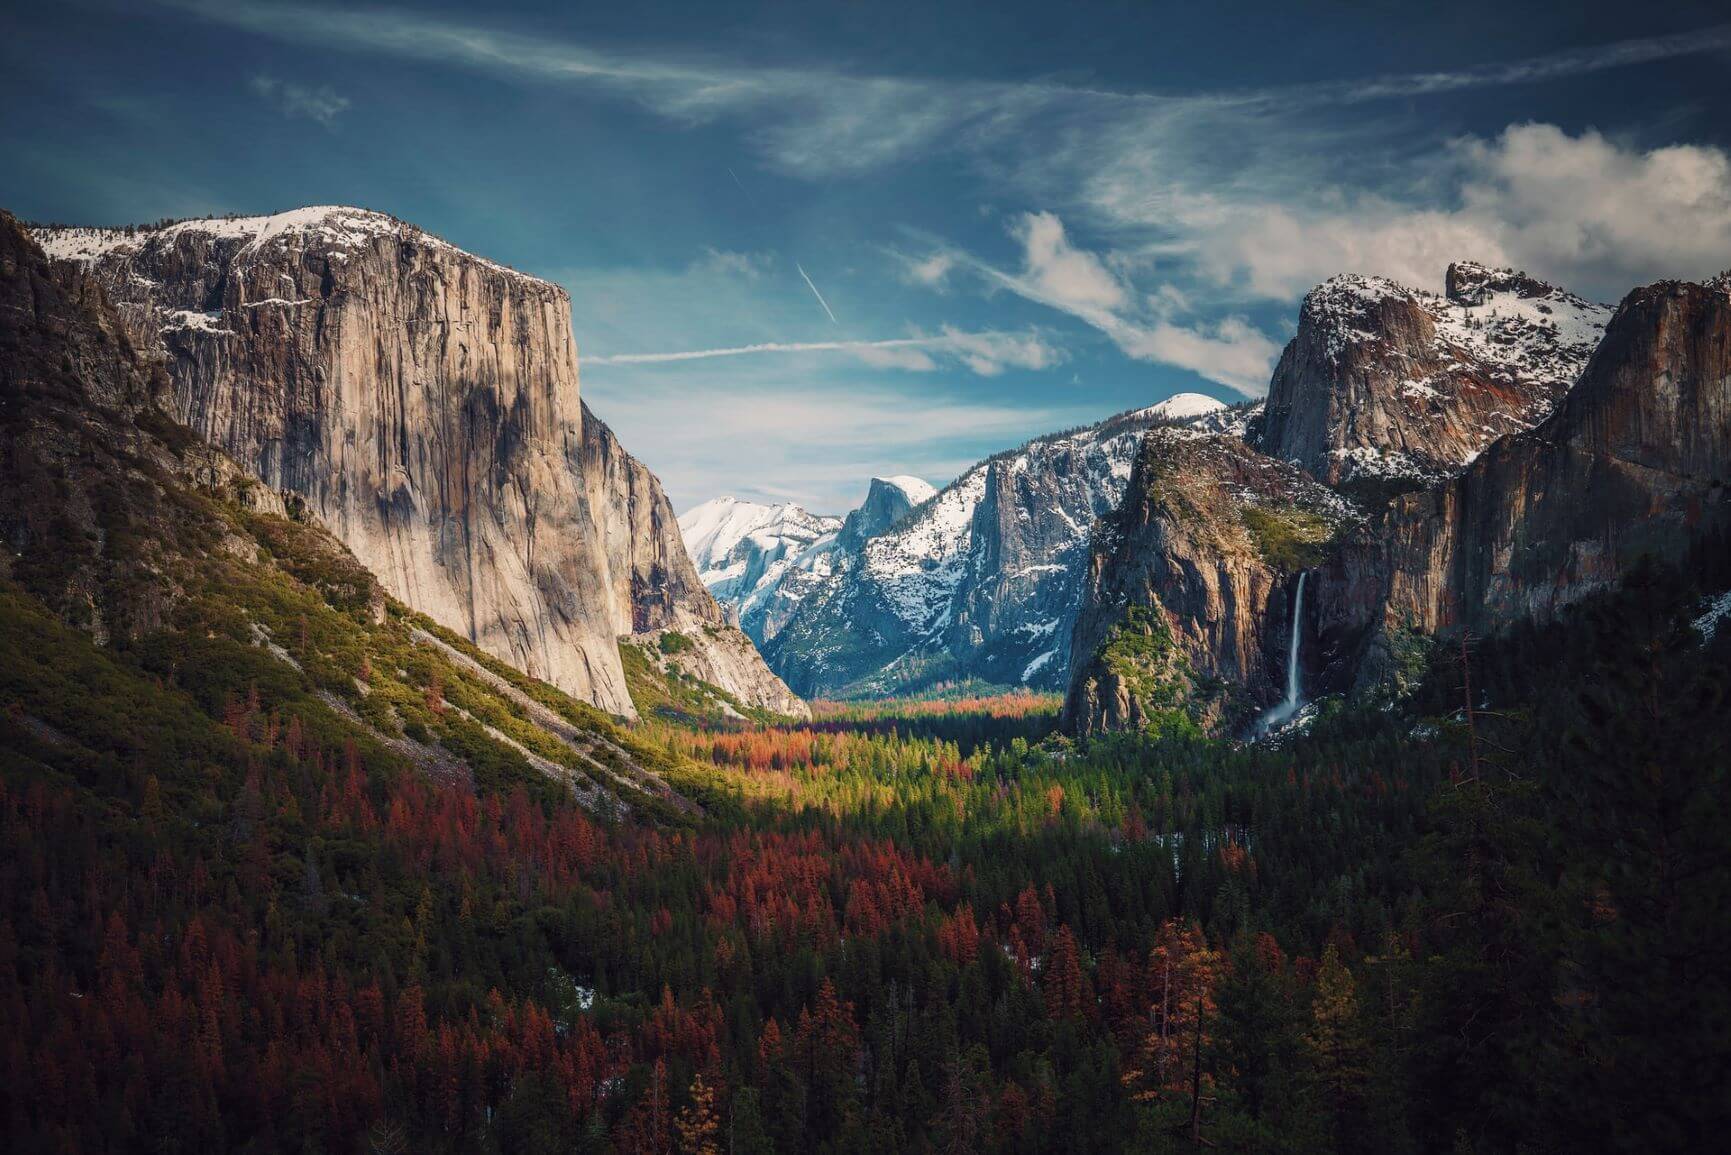 Yosemite National Park in California